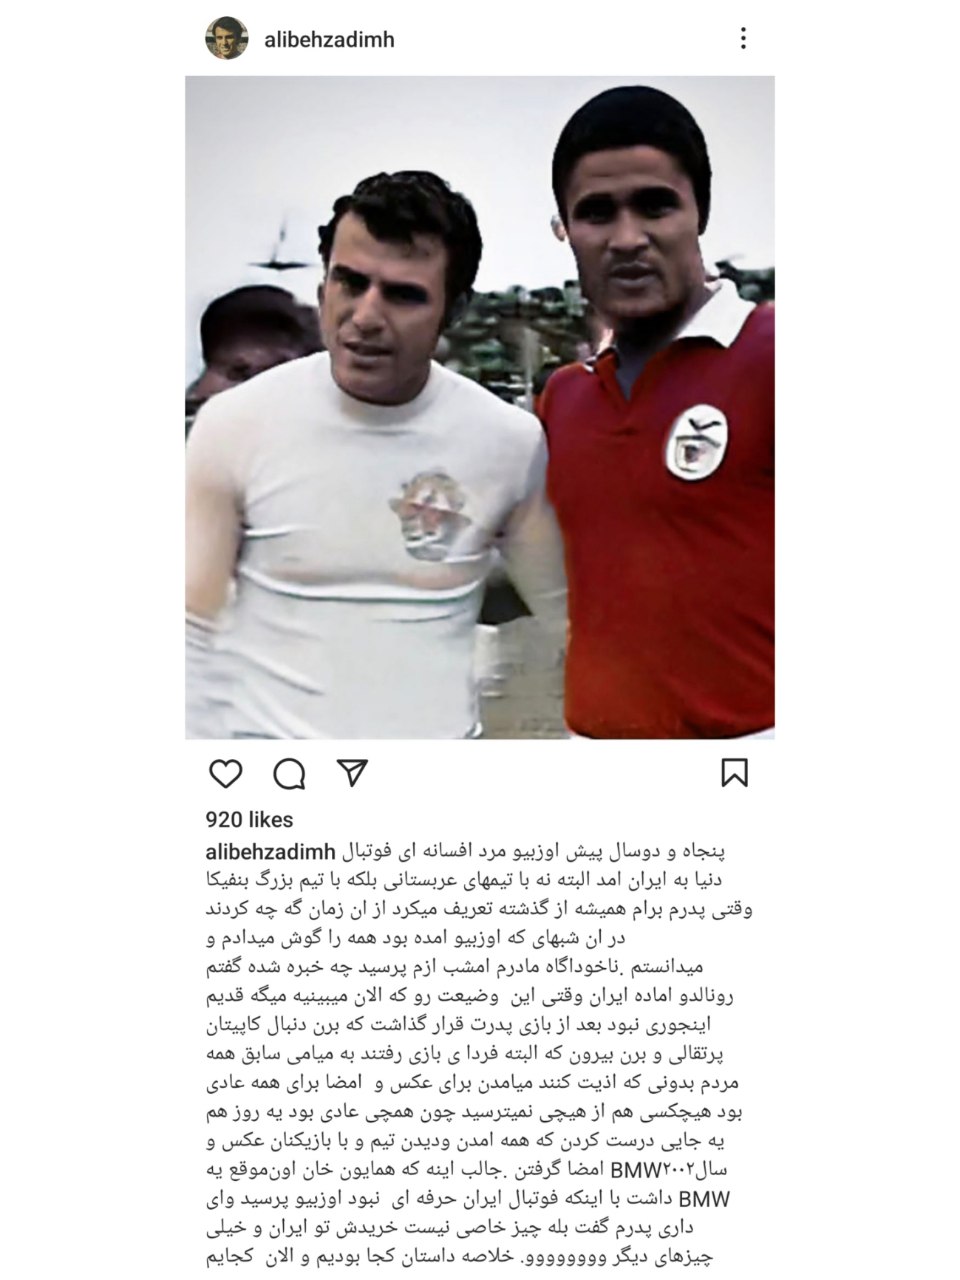 وقتی ستاره فوتبال دنیا از دیدن شرایط ایران هنگ کرد